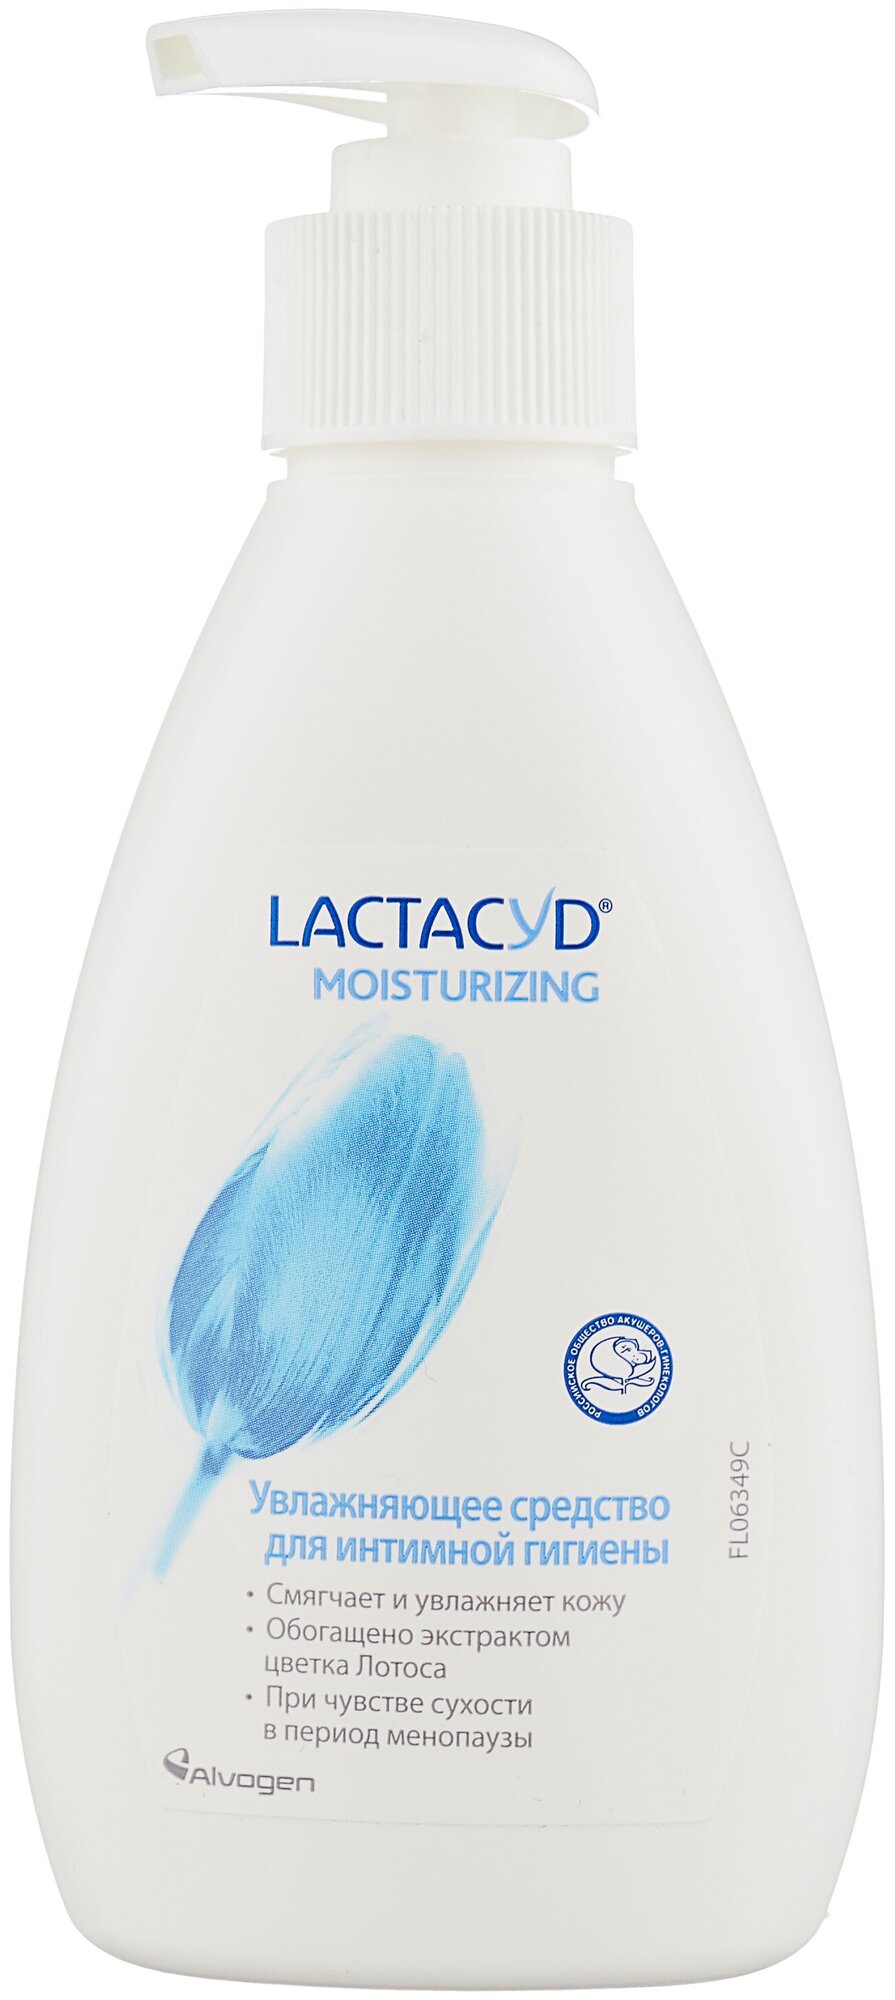 Lactacyd средство для интимной гигиены Moisturizing